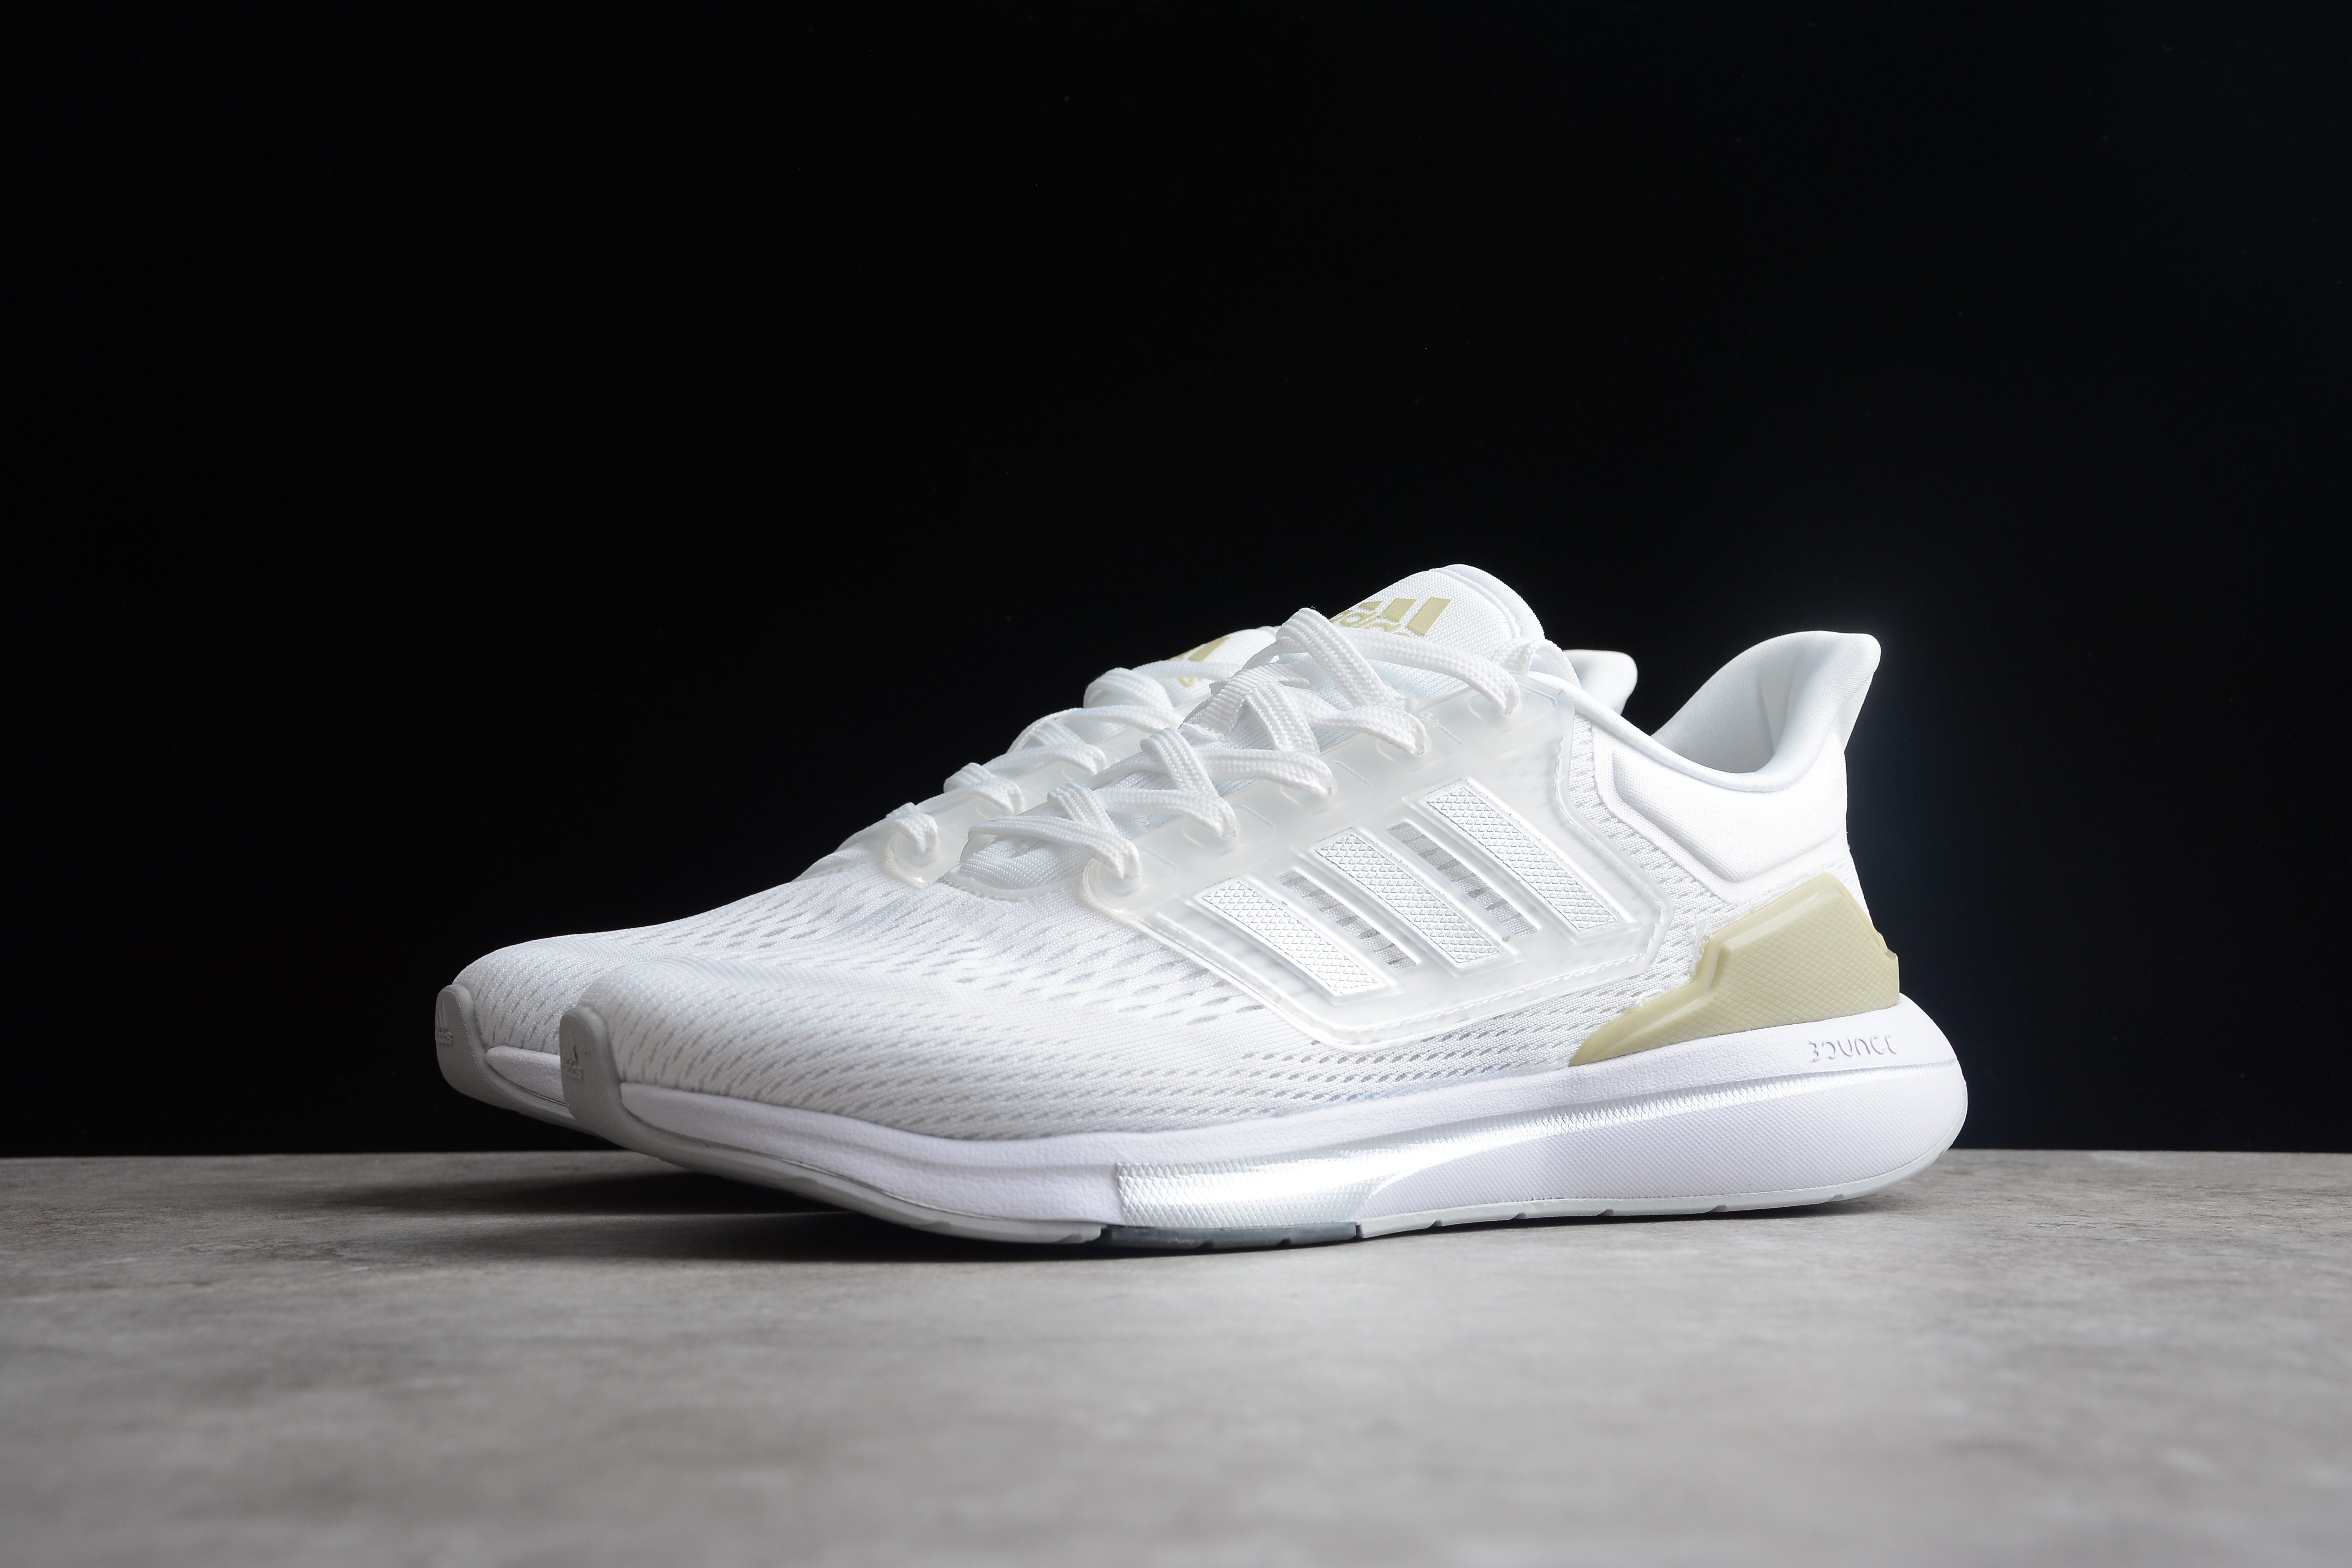 Adidas EQ21 RUN white/gold